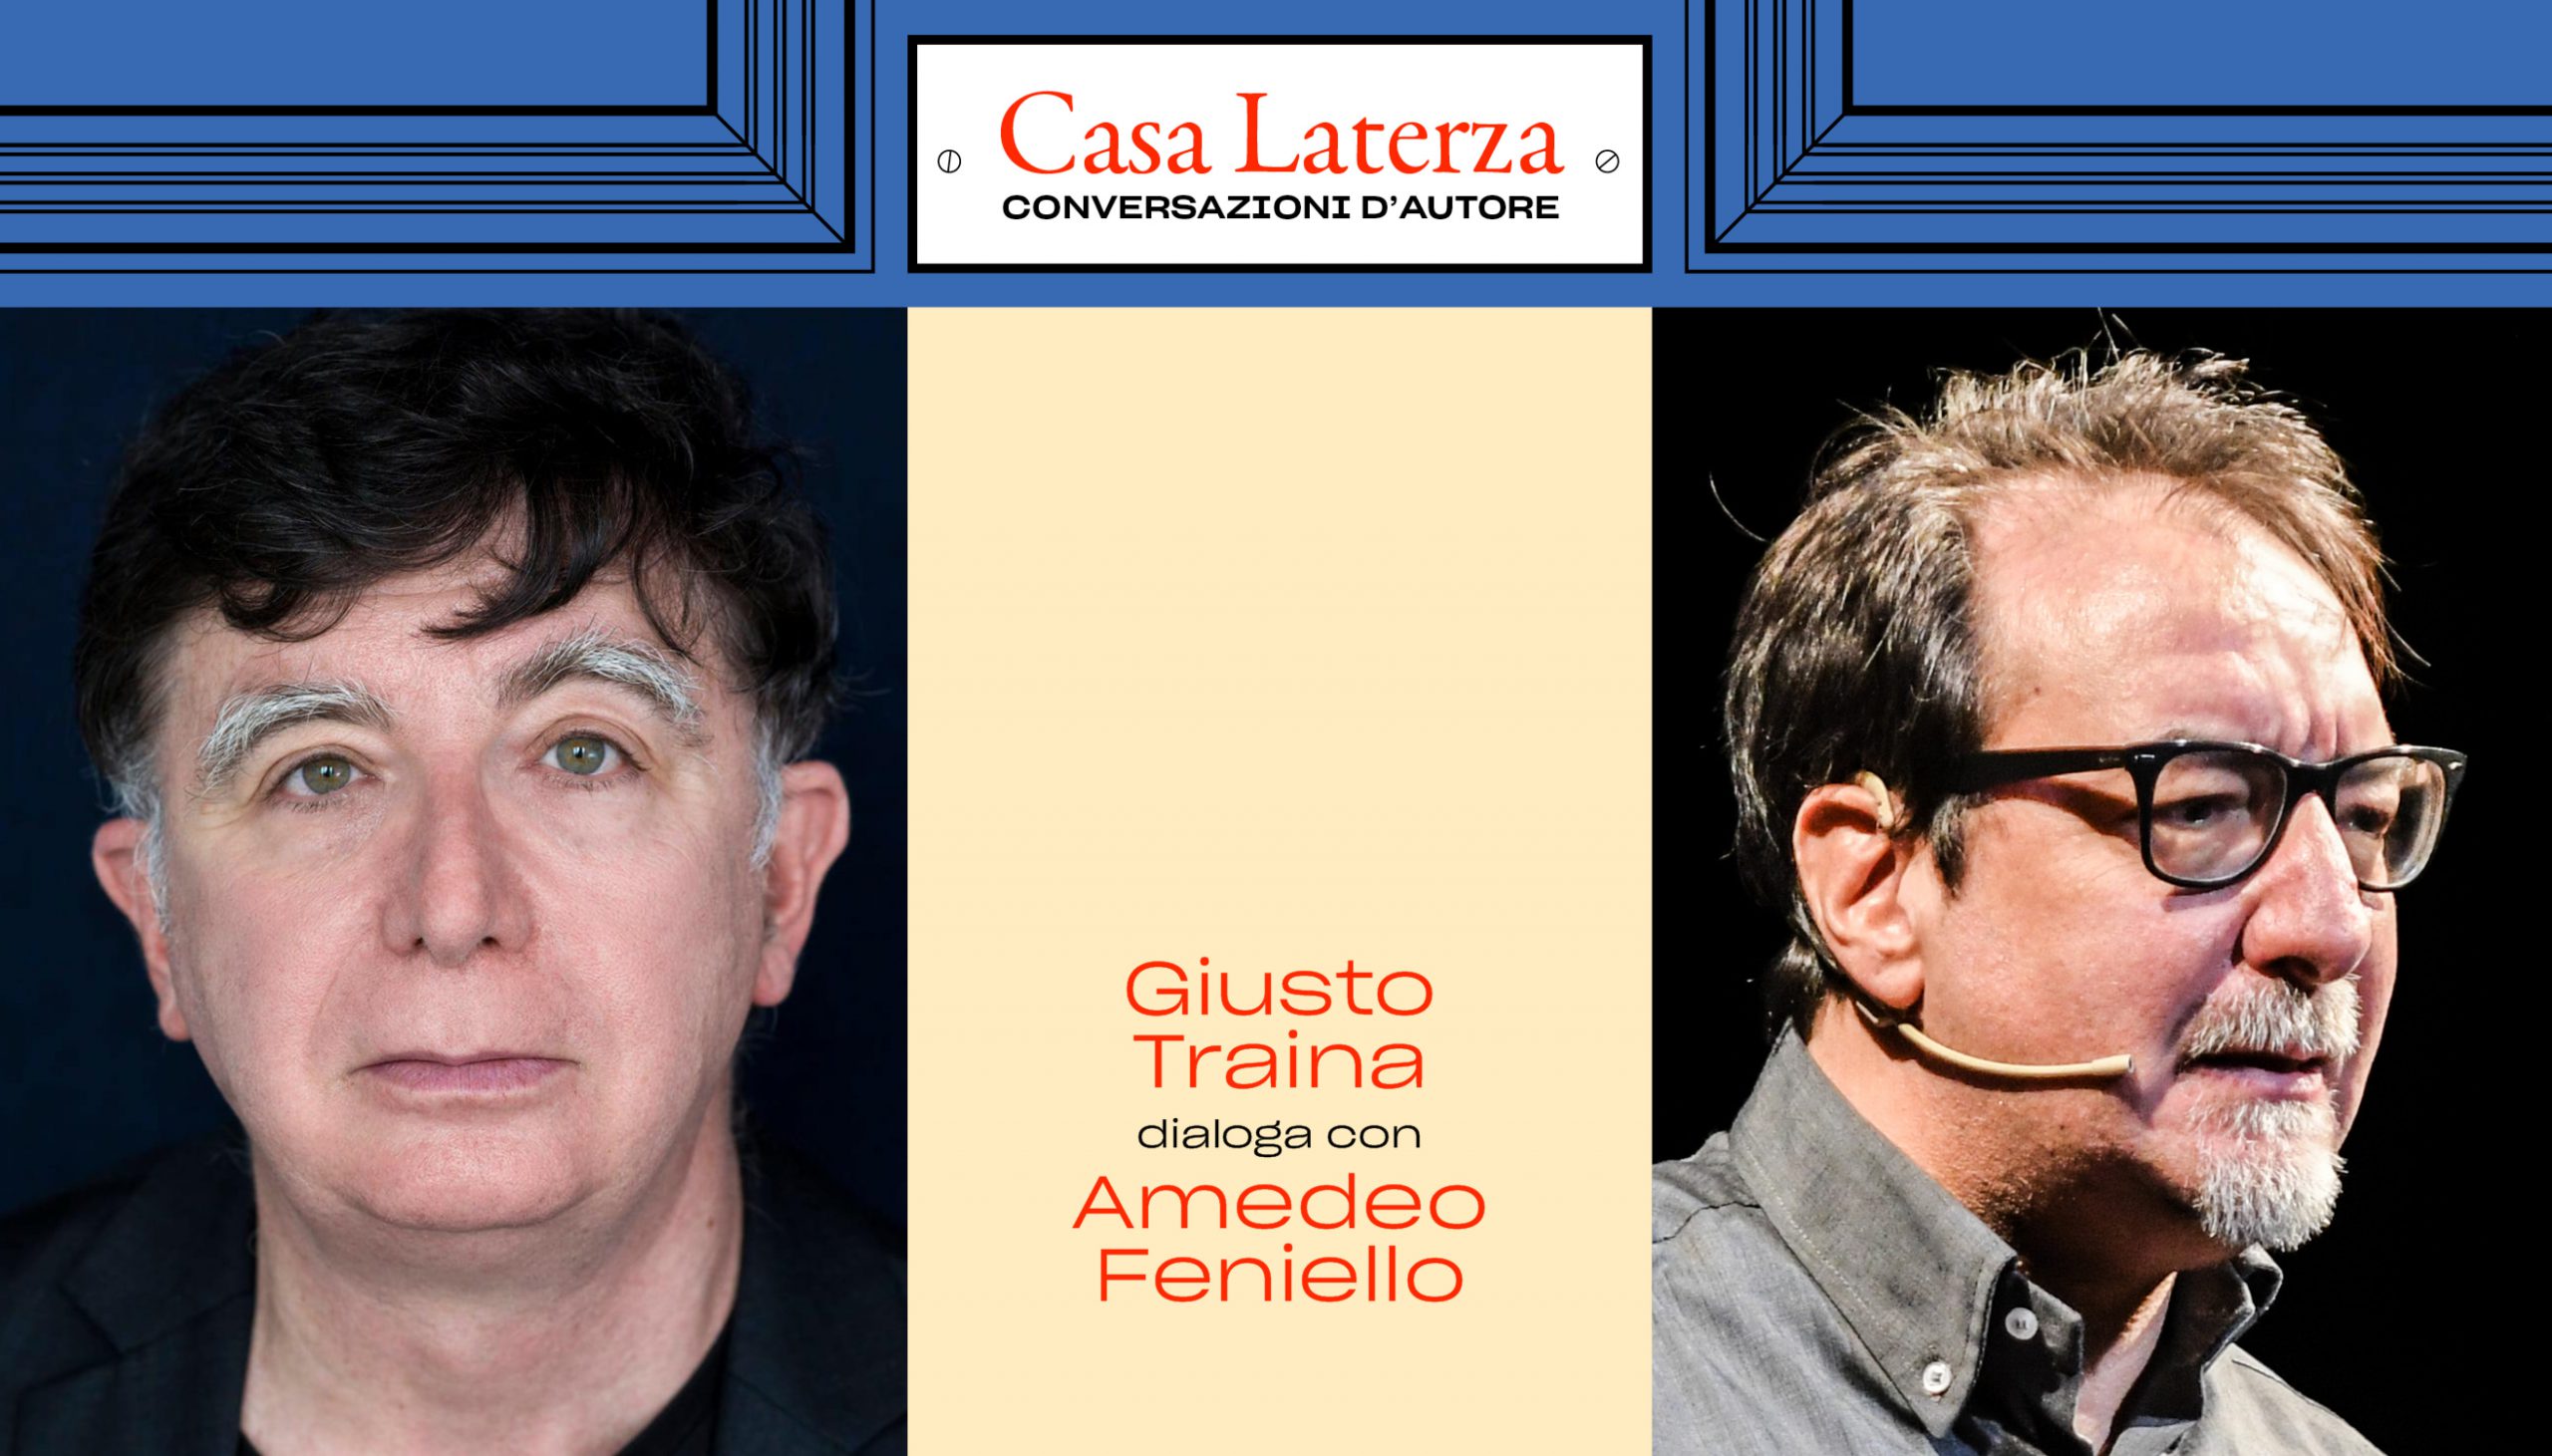 #CasaLaterza: Giusto Traina in dialogo con Amedeo Feniello